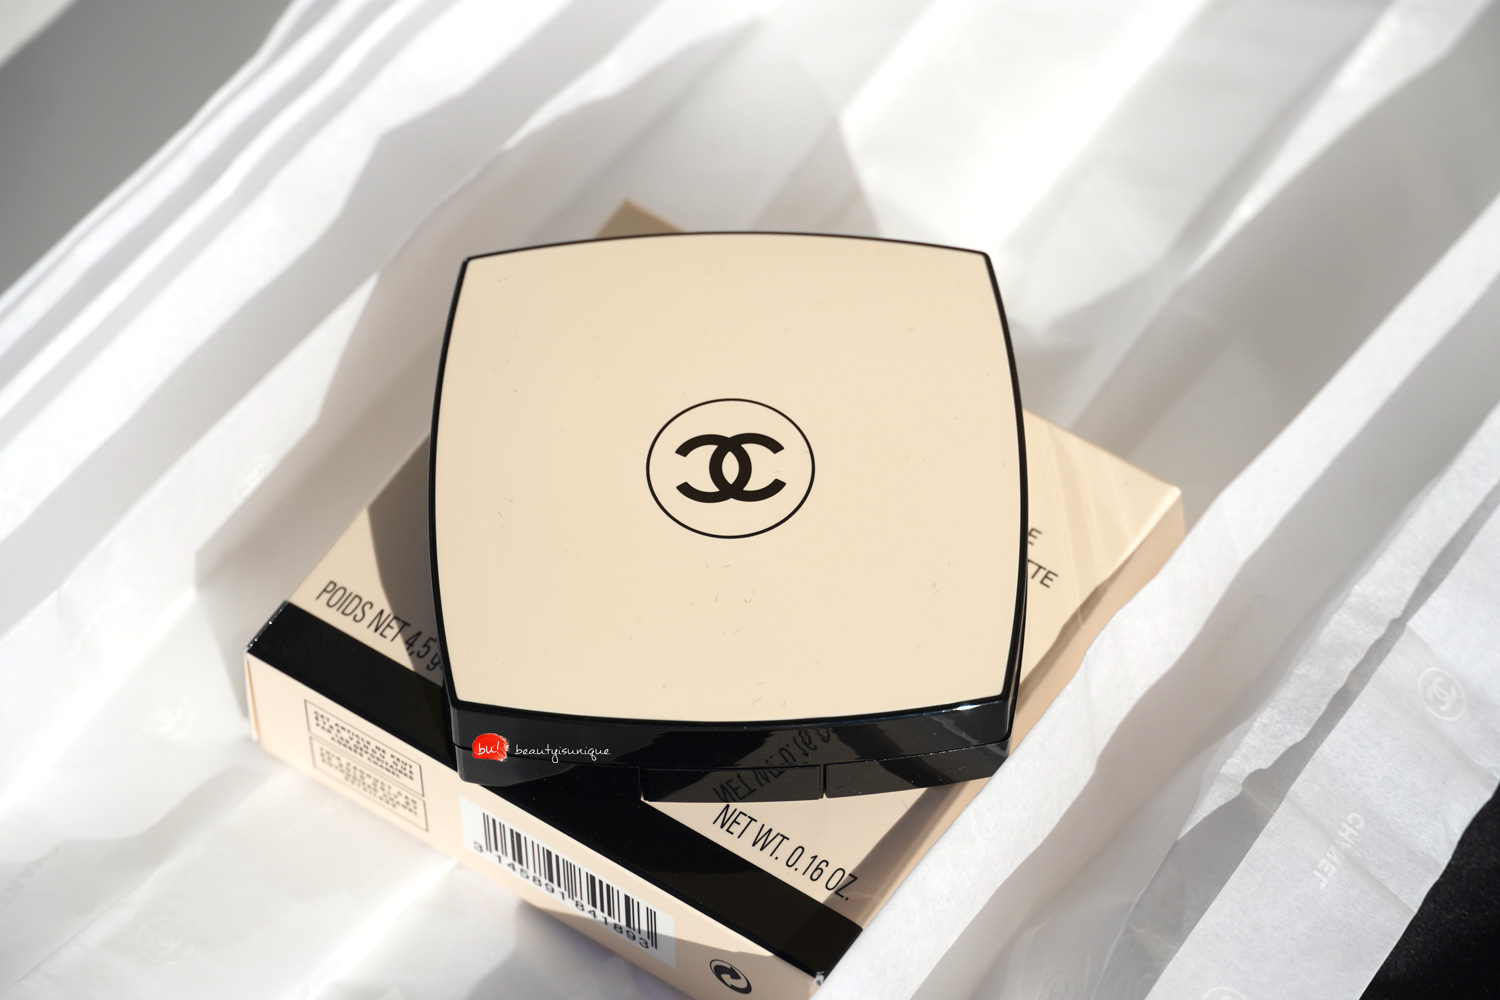 Chanel-les-beiges-palette-warm